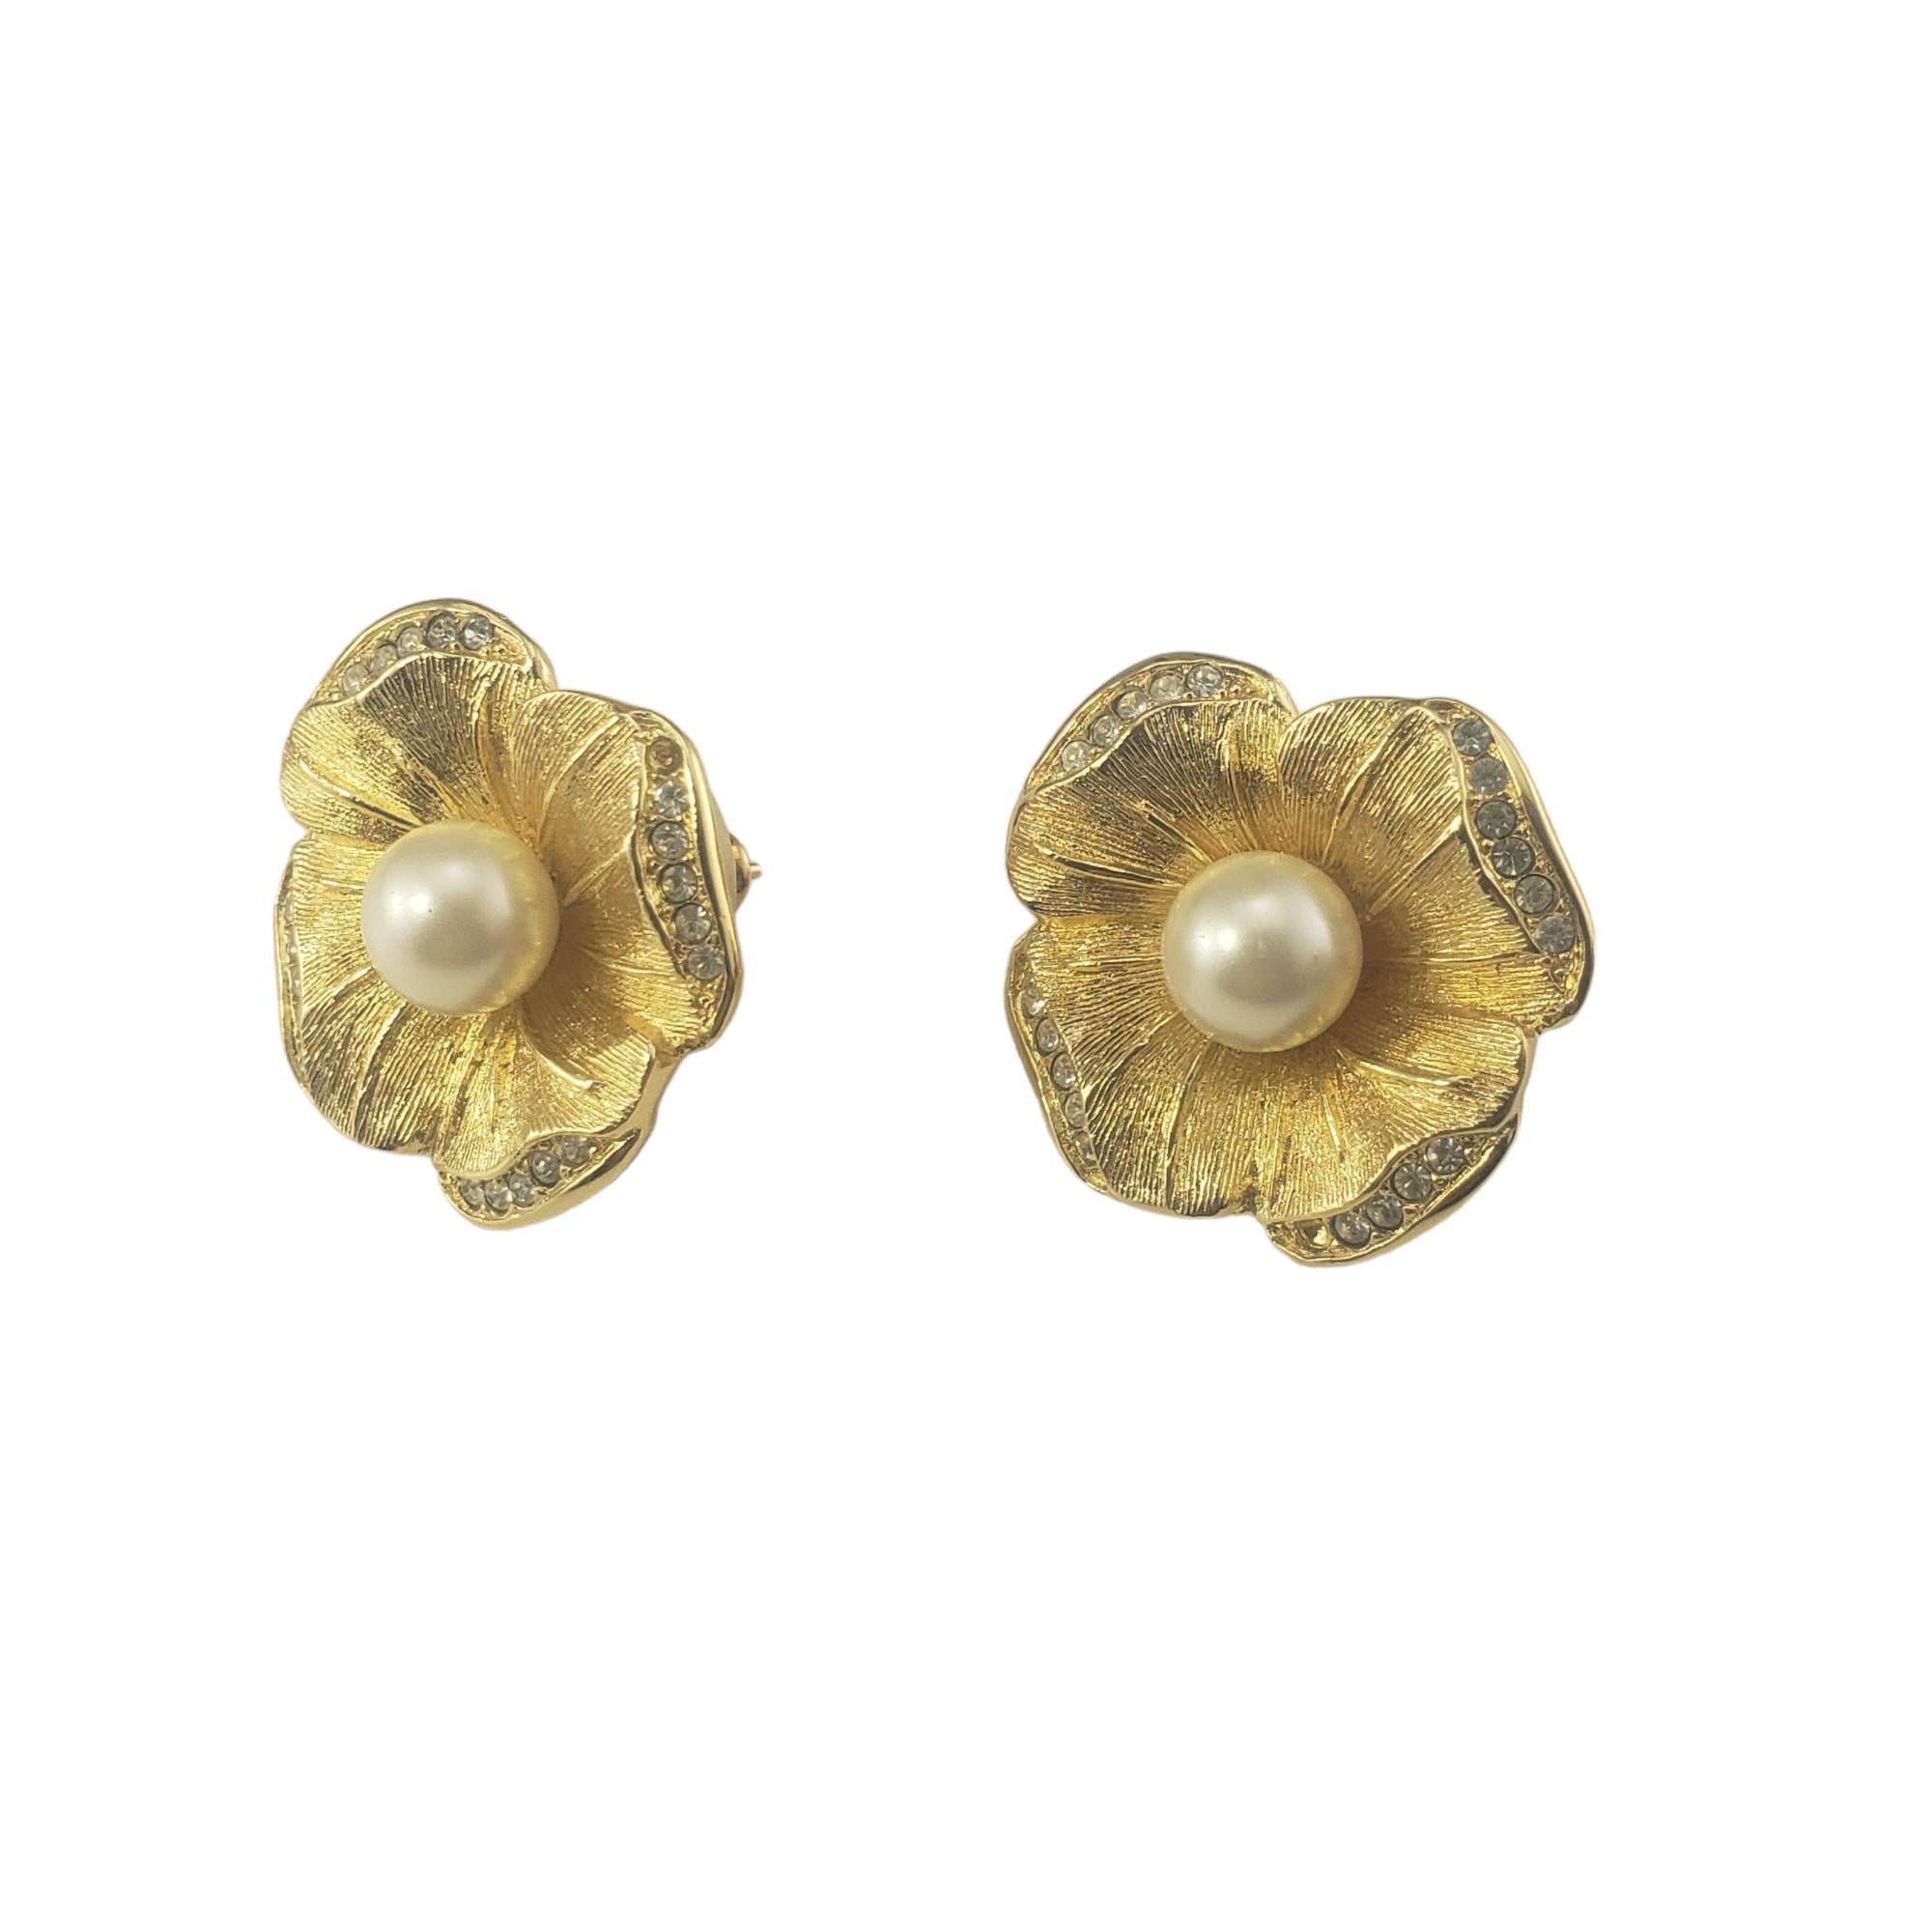 Boucles d'oreilles fleurs vintage Christian Dior-

Ces élégantes boucles d'oreilles fleuries de Christian Dior sont ornées d'une fausse perle et de cristaux étincelants.  Fermetures à l'arrière.

Taille : 25 mm

Hallmark :  Chr.Dior

Poids : 7.7